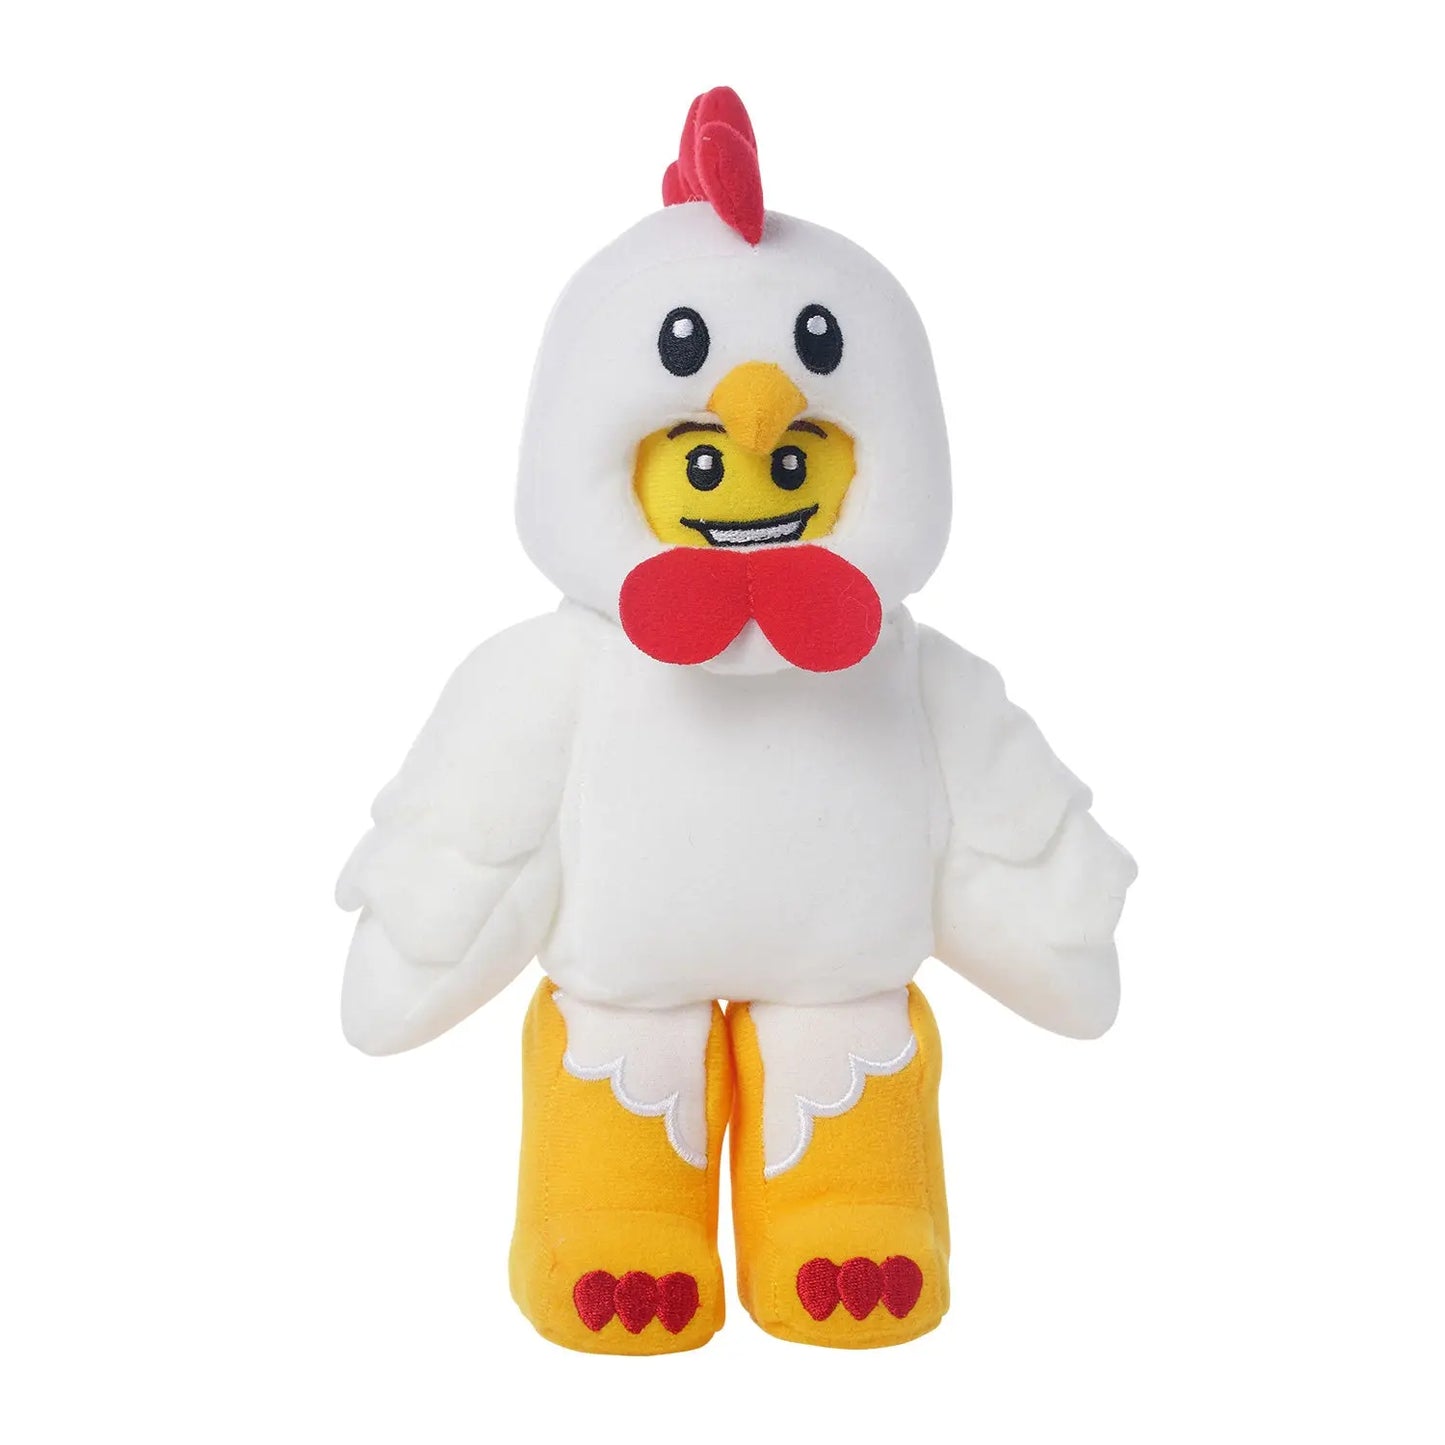 Manhattan Toy Co Lego Chicken Suit Guy Plush